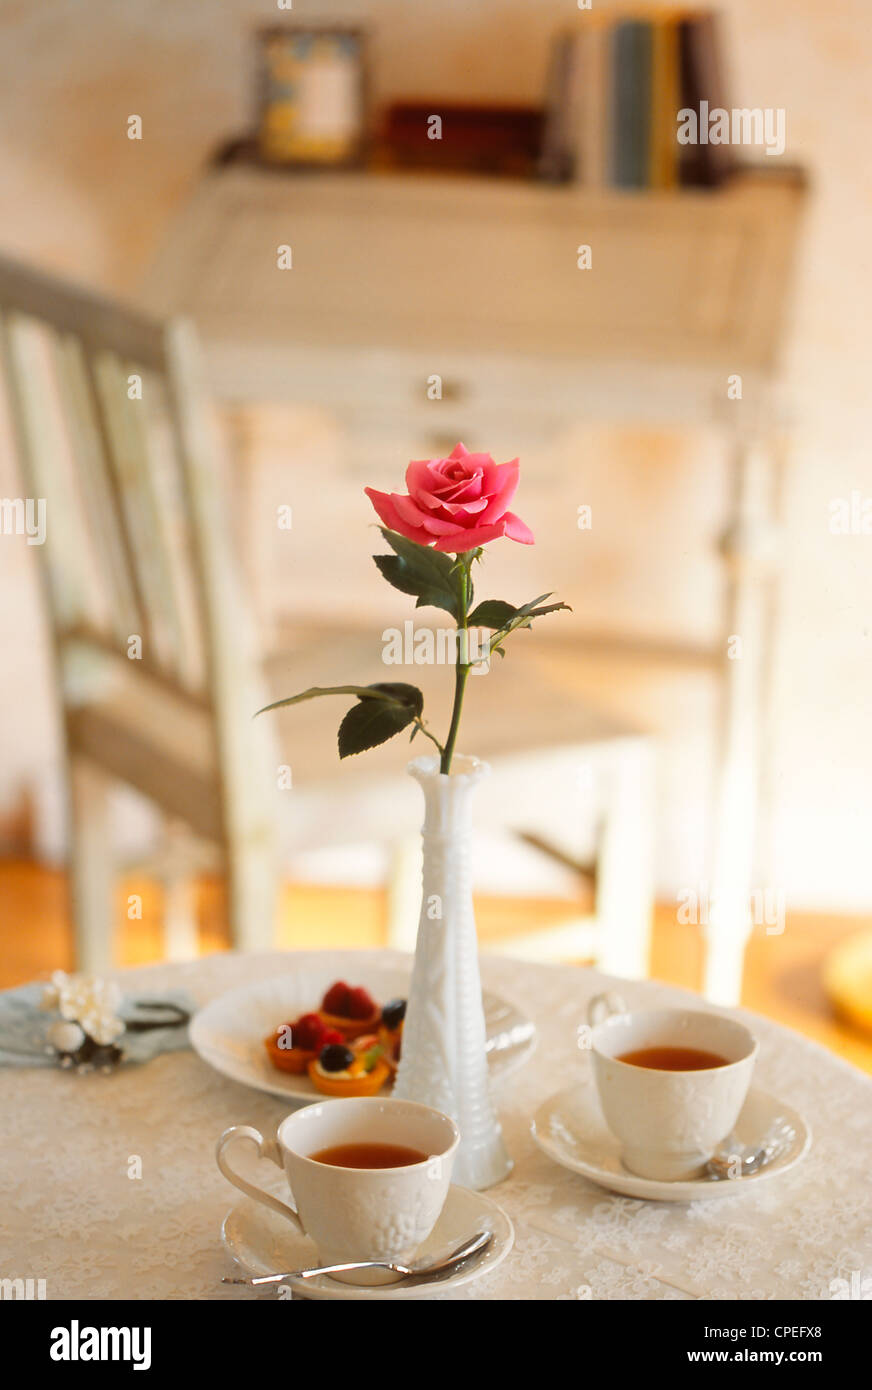 Rosa rosa in vaso sul tavolo da pranzo Foto Stock